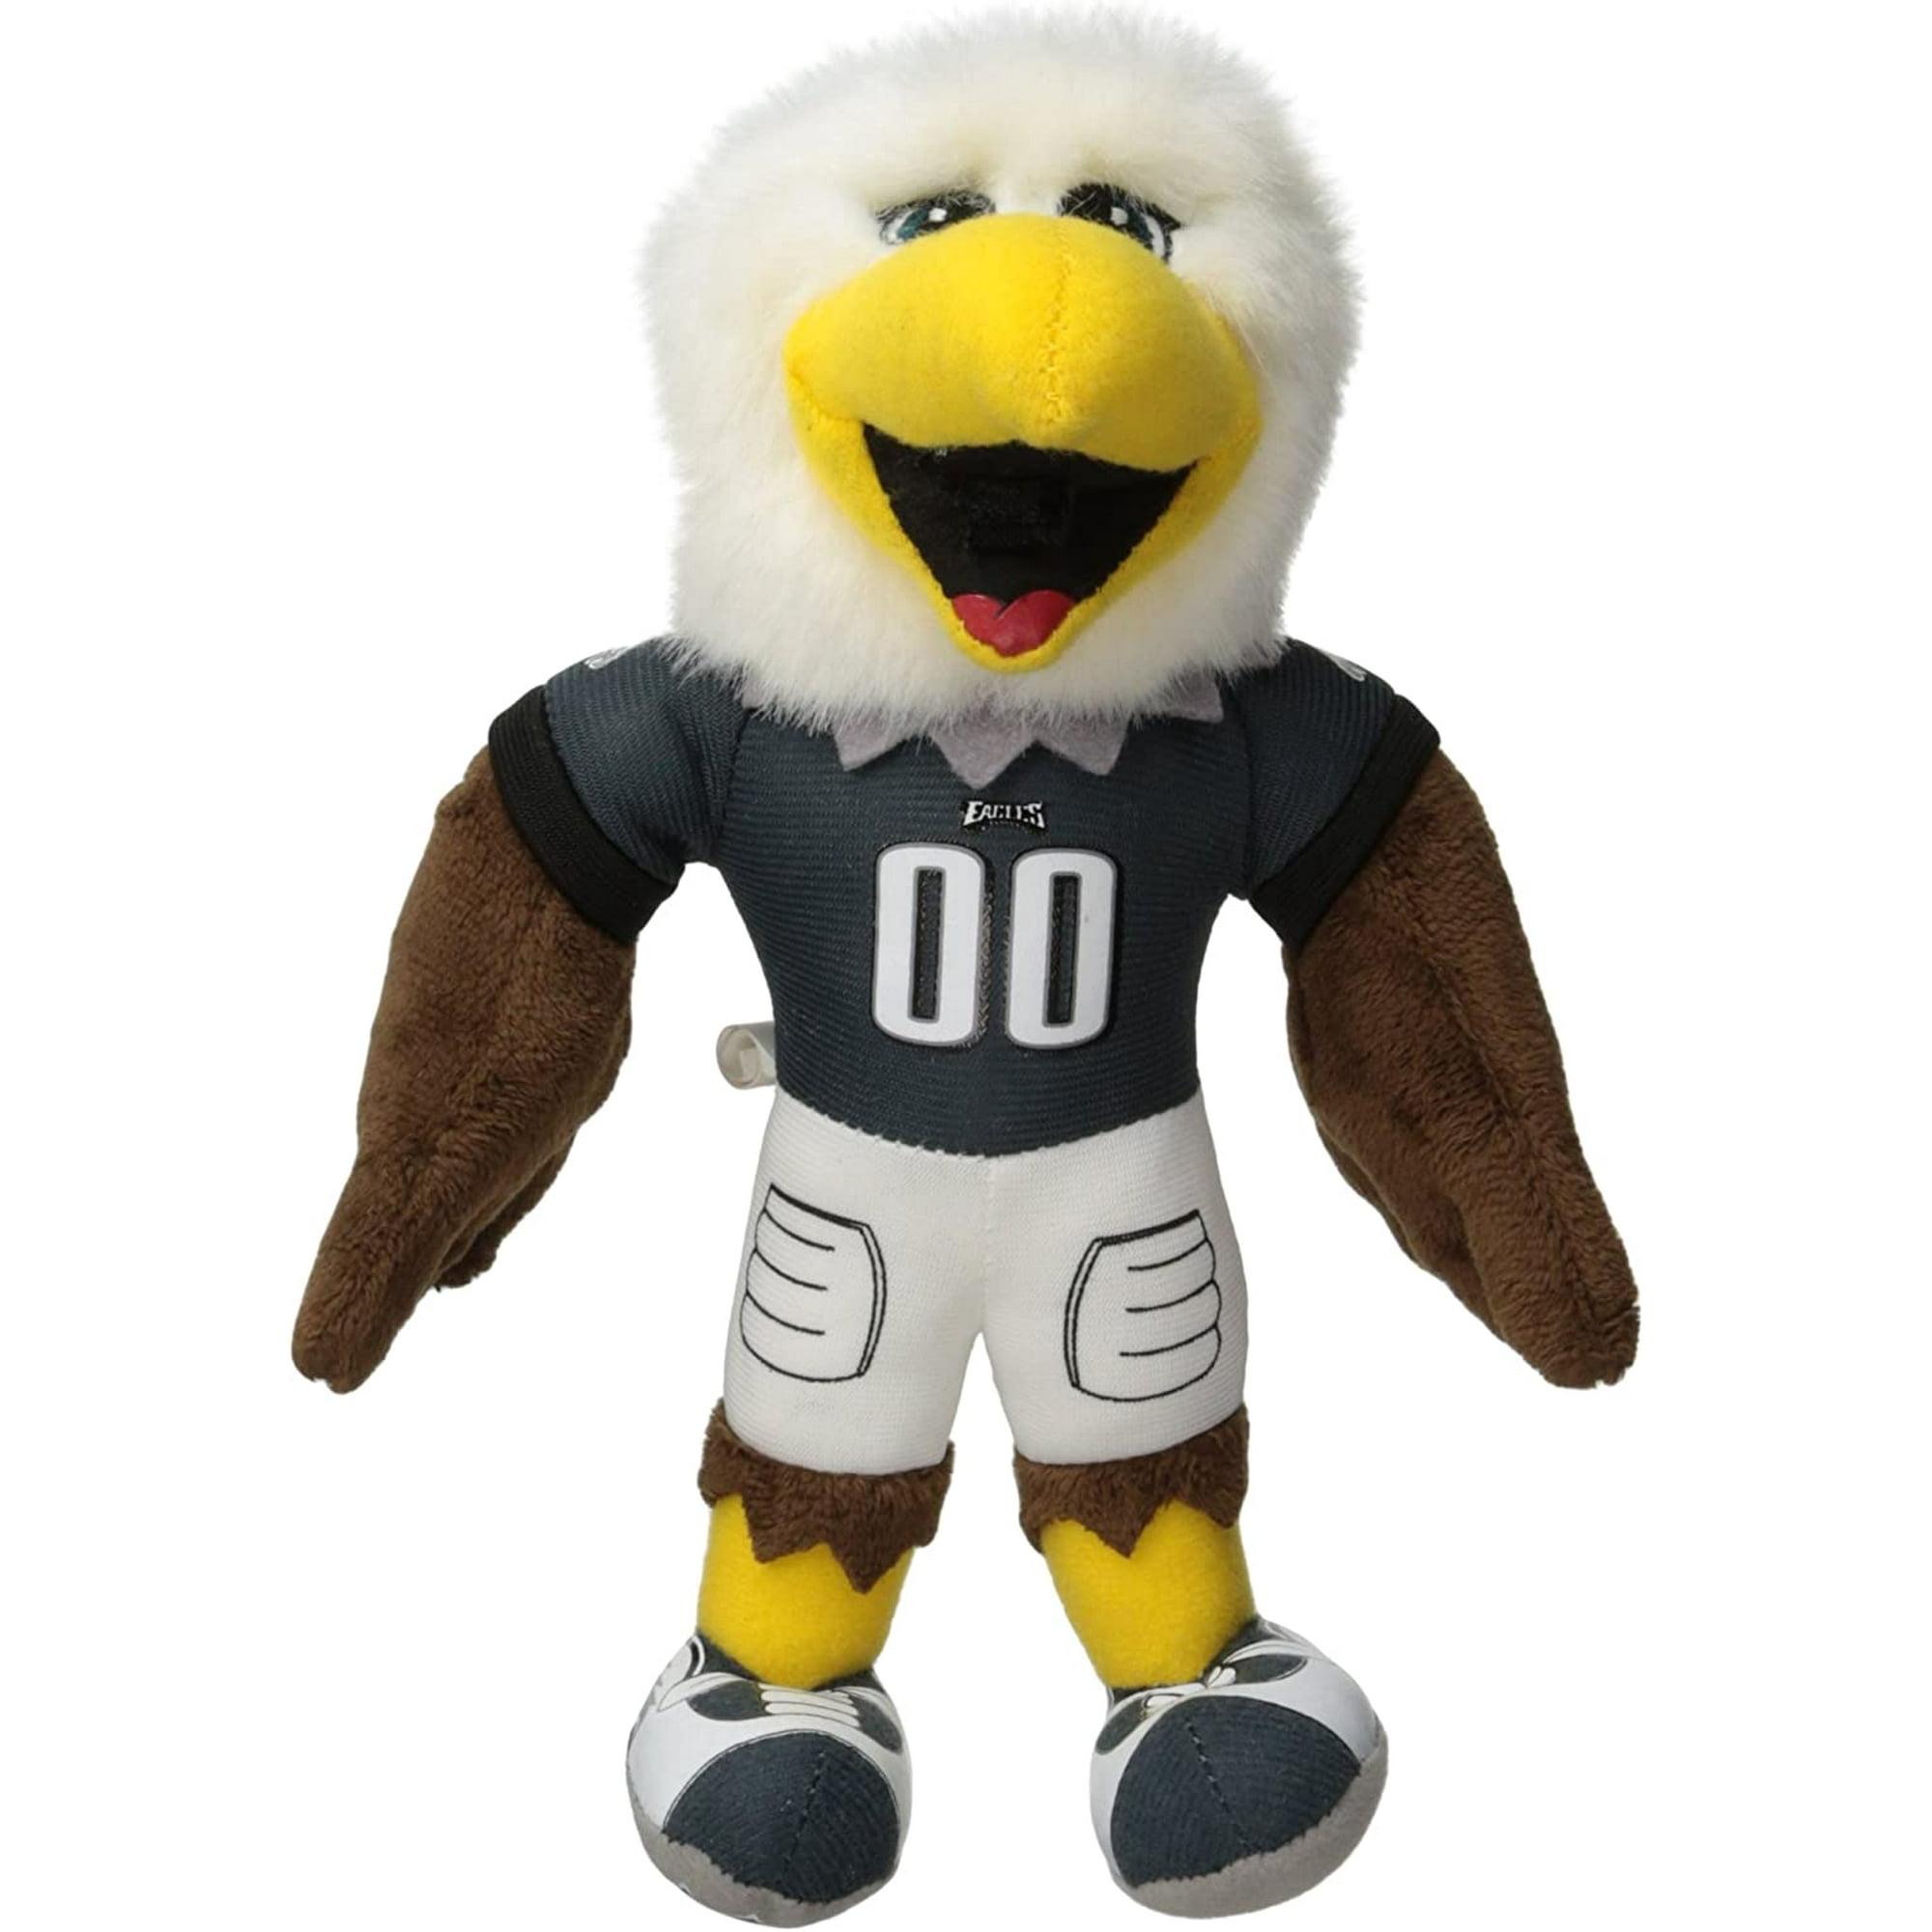 swoop eagles mascot